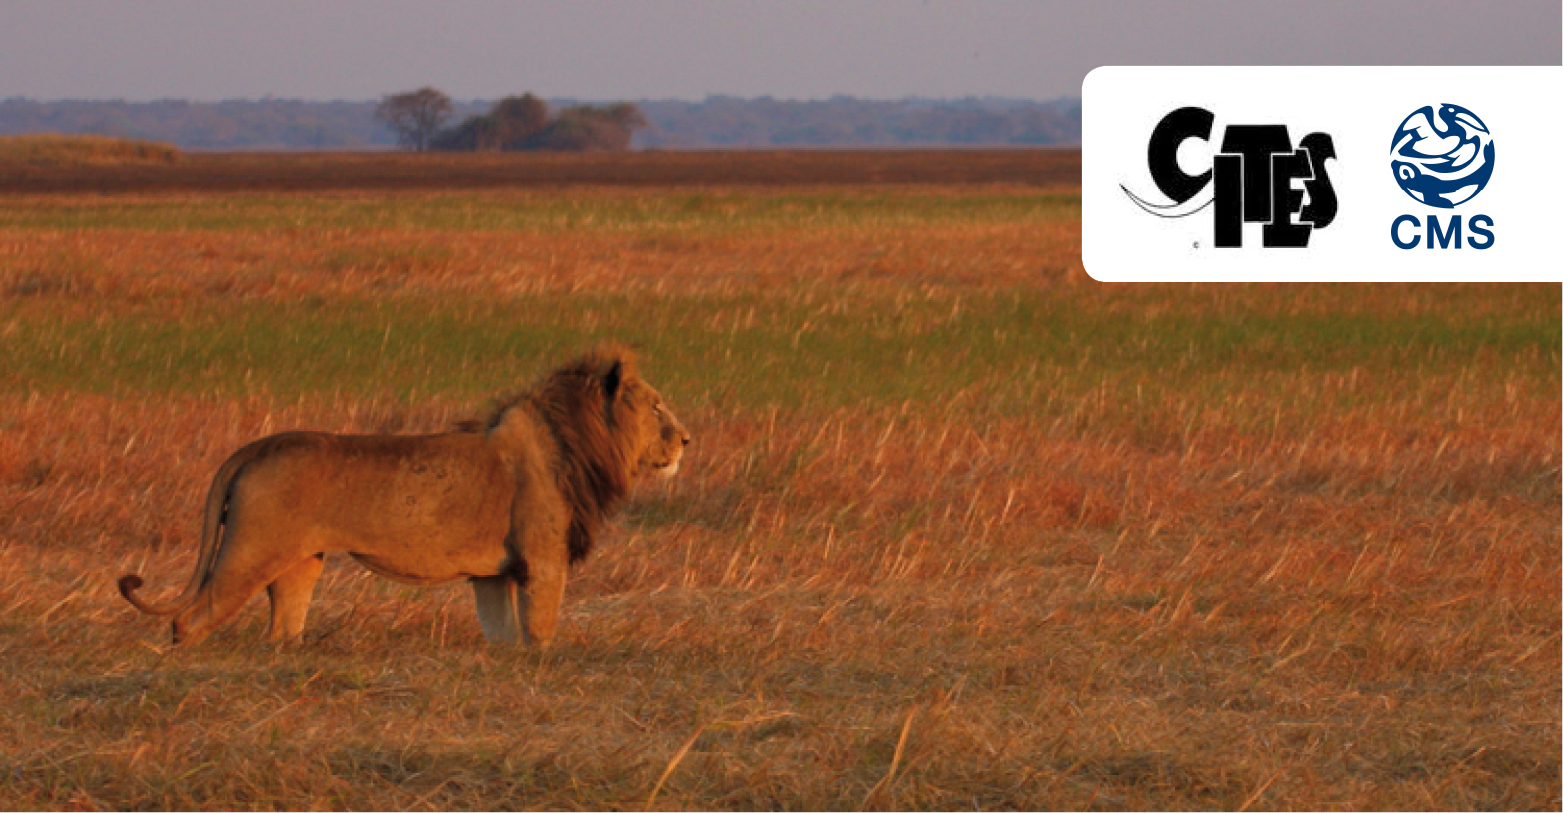 Salvando a los leones: África se pone de acuerdo sobre el camino a seguir |  CMS